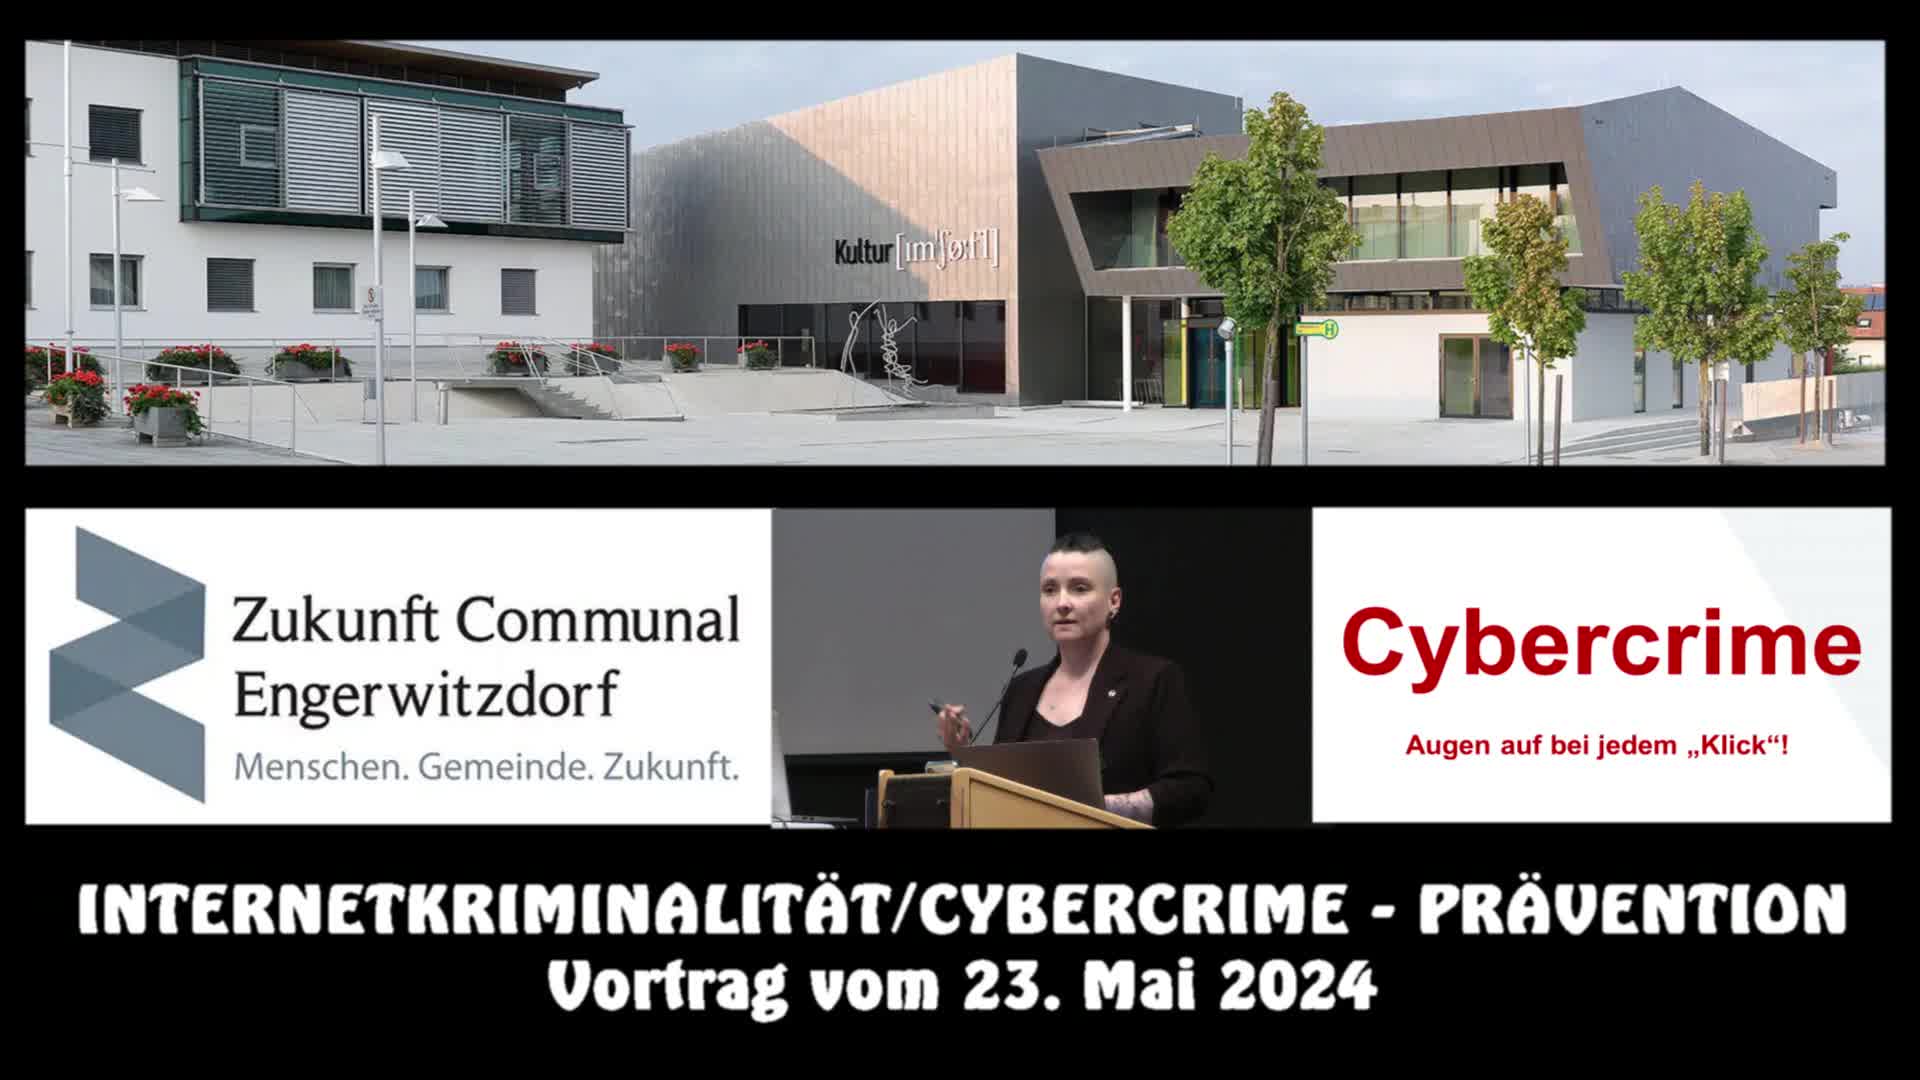 Internetkriminalität/Cybercrime - Prävention